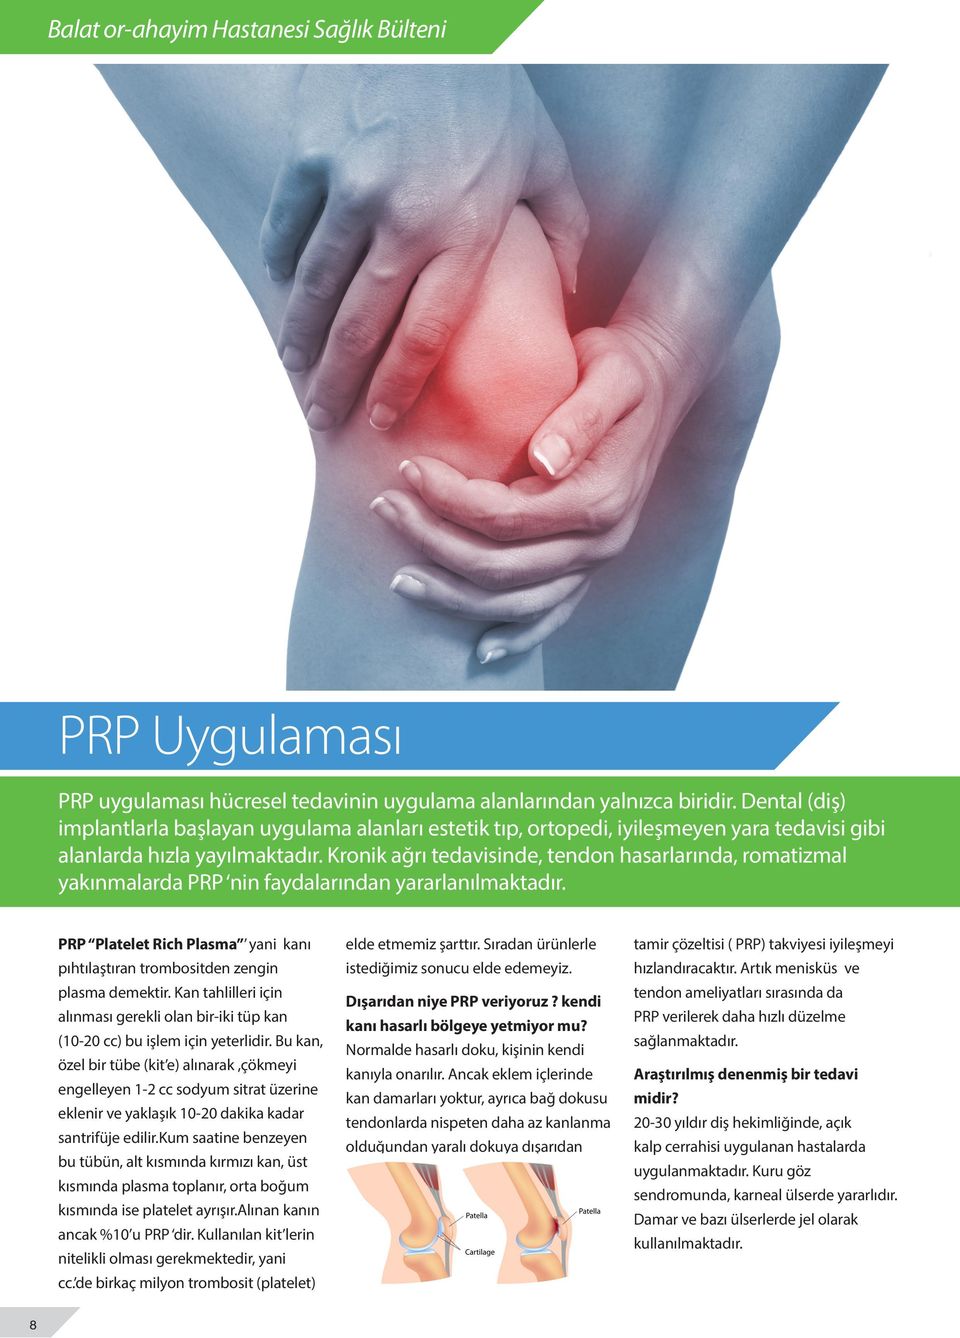 Kronik ağrı tedavisinde, tendon hasarlarında, romatizmal yakınmalarda PRP nin faydalarından yararlanılmaktadır. PRP Platelet Rich Plasma yani kanı pıhtılaştıran trombositden zengin plasma demektir.